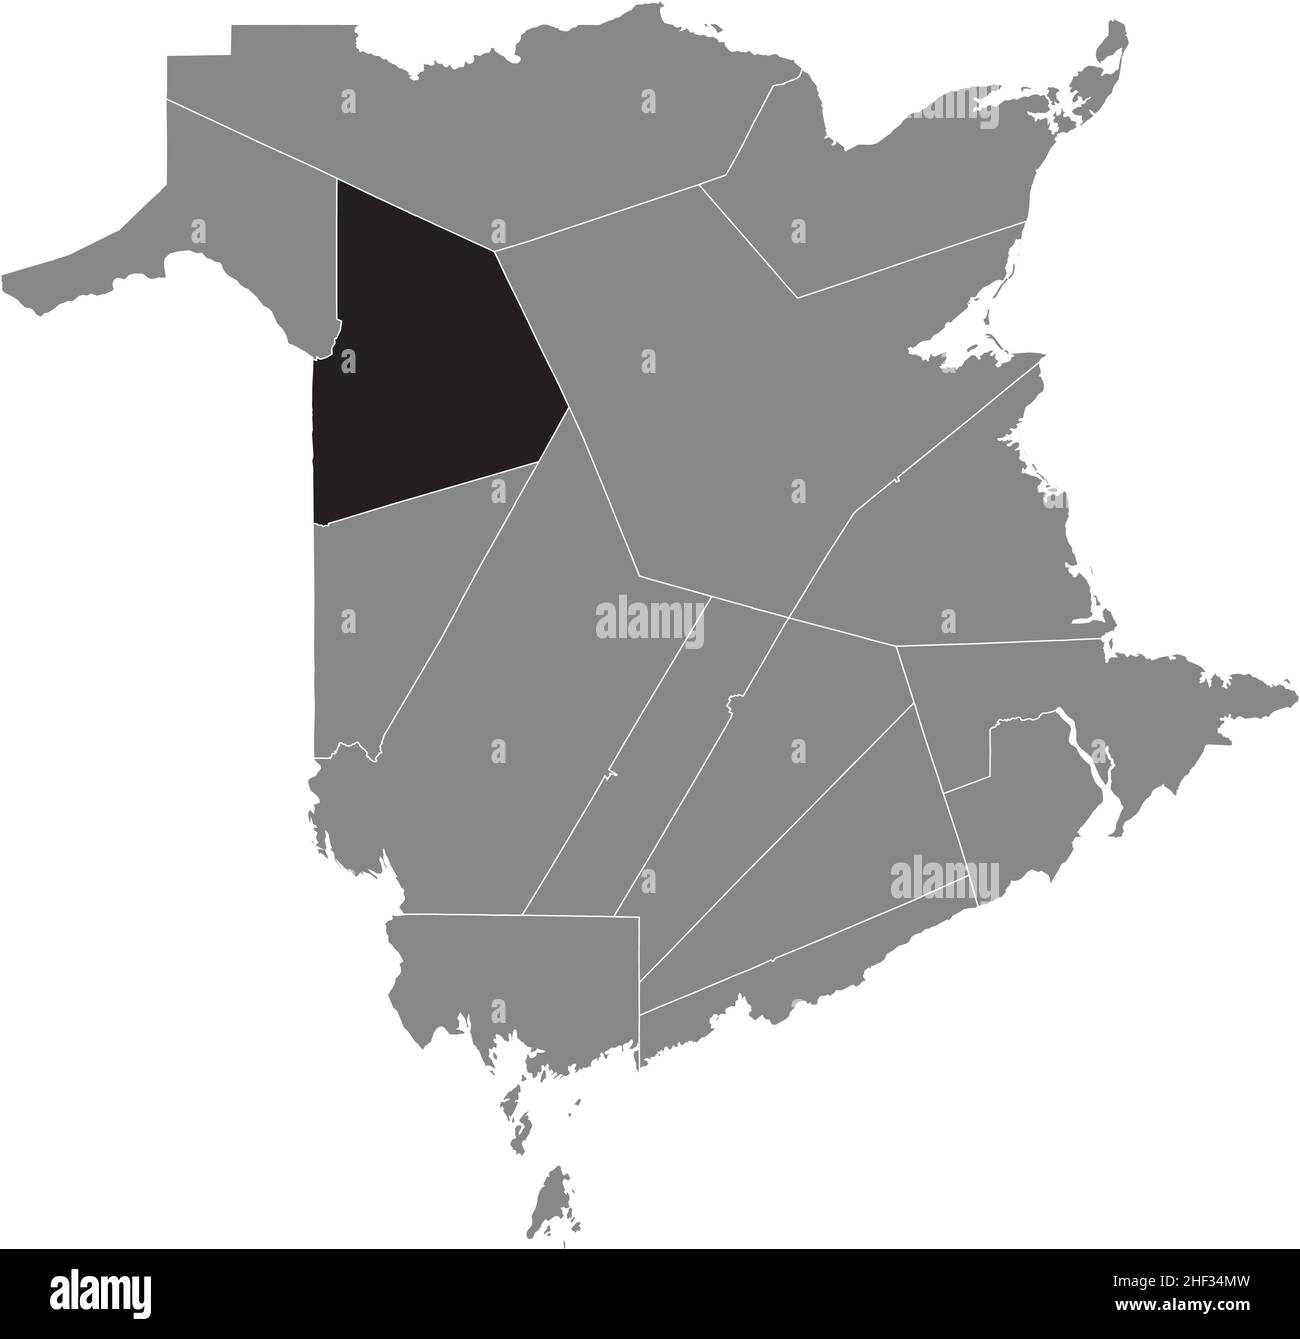 Schwarz flach leer markiert Lageplan des VICTORIA COUNTY in grauer Verwaltungskarte der Grafschaften des kanadischen Territoriums von New Brunswick, ca. Stock Vektor